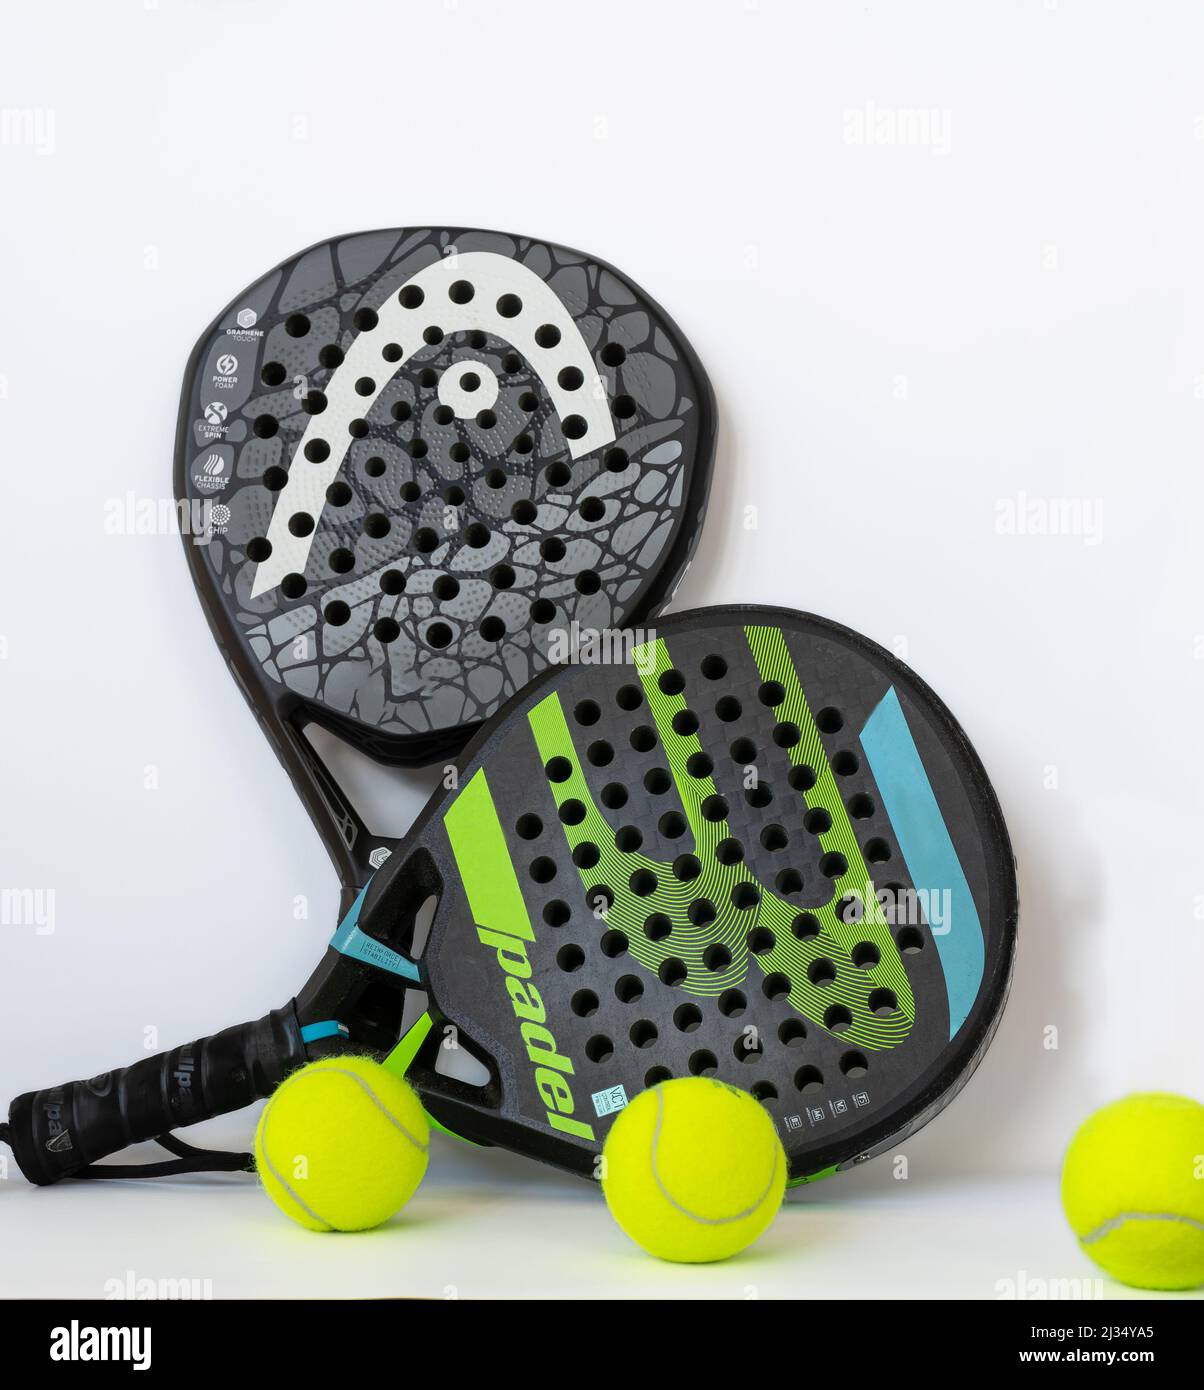 racket de pádel y pelotas de tenis, juego de padel Foto de stock